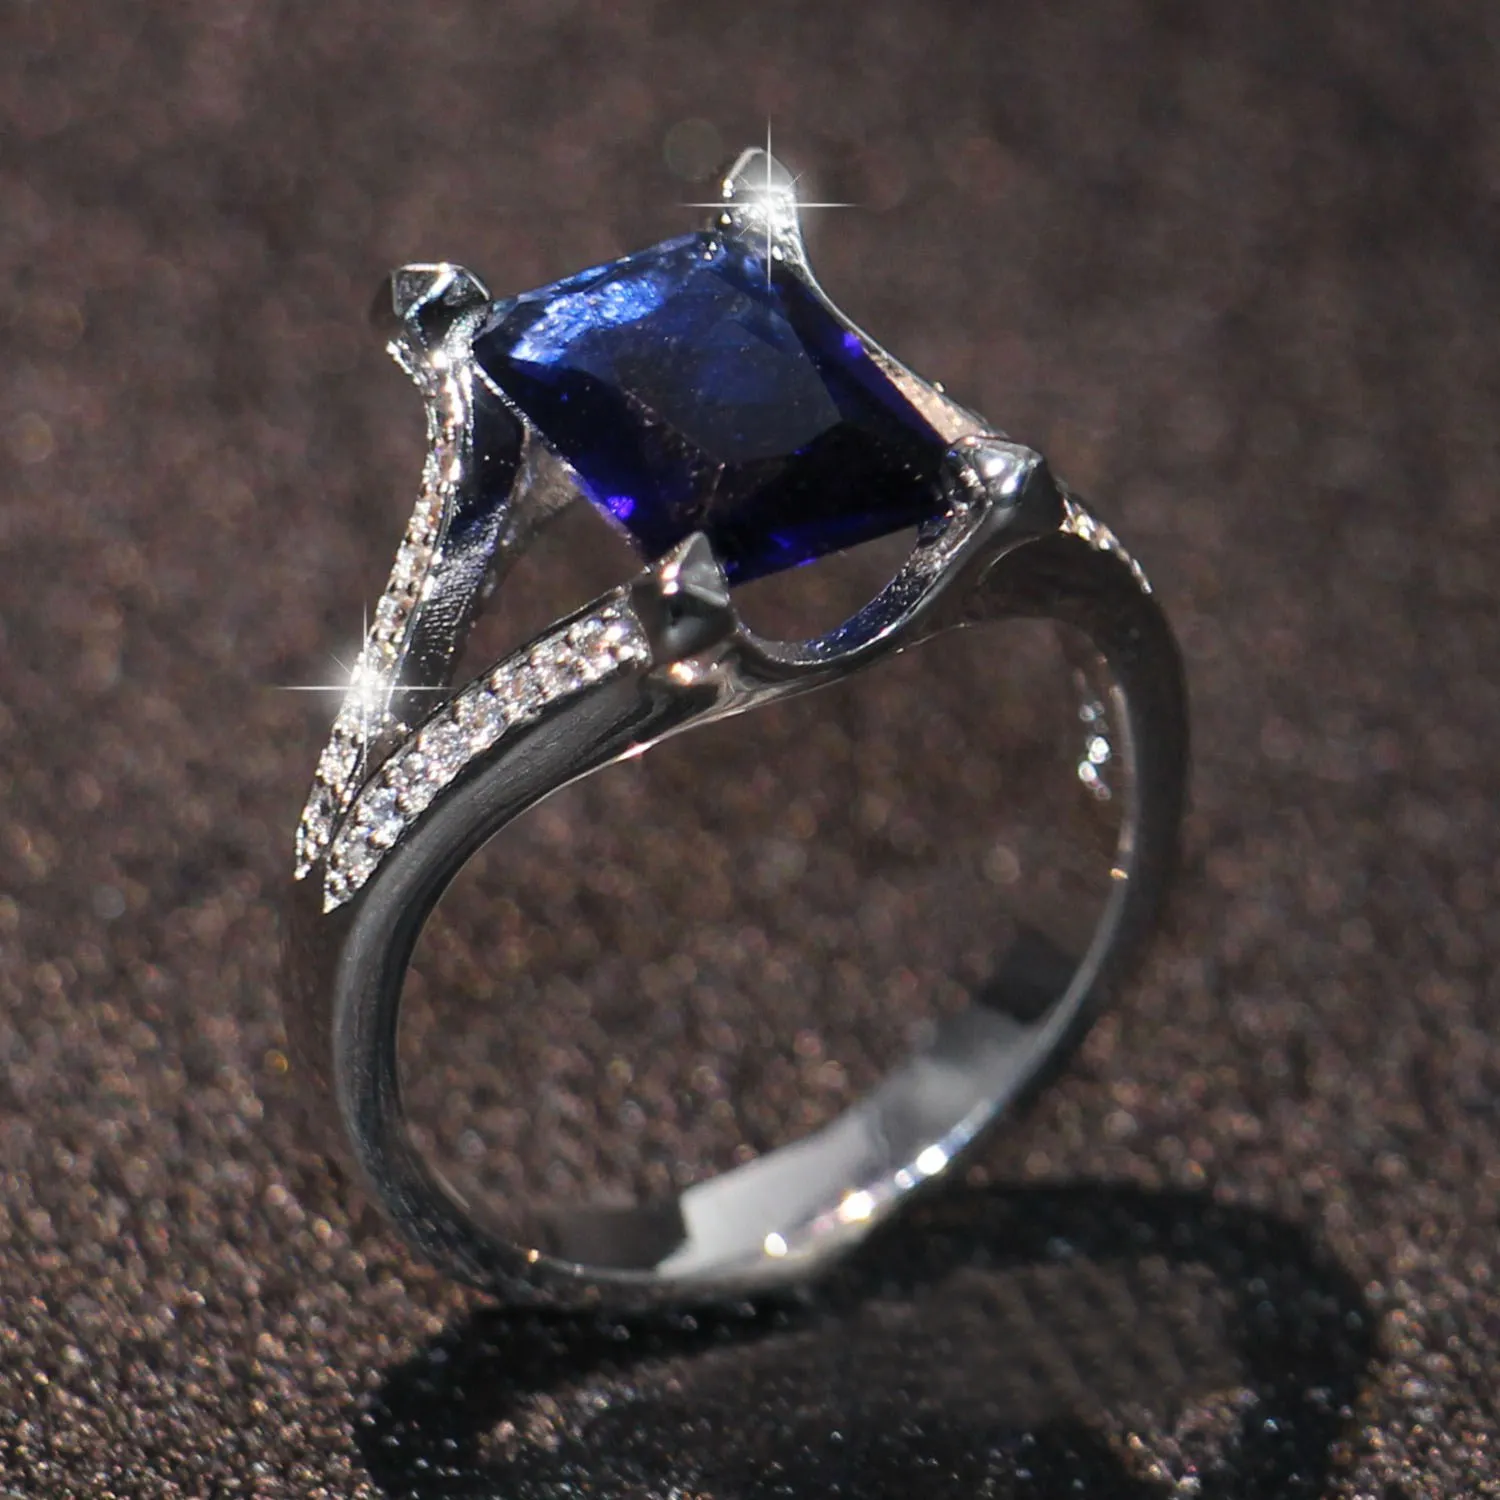 2018 Neuankömmling Meistverkaufter Luxusschmuck 925 Sterling Silber Princess Cut 4CT Blauer Saphir CZ Diamant Party Herren Ehering Ring Geschenk